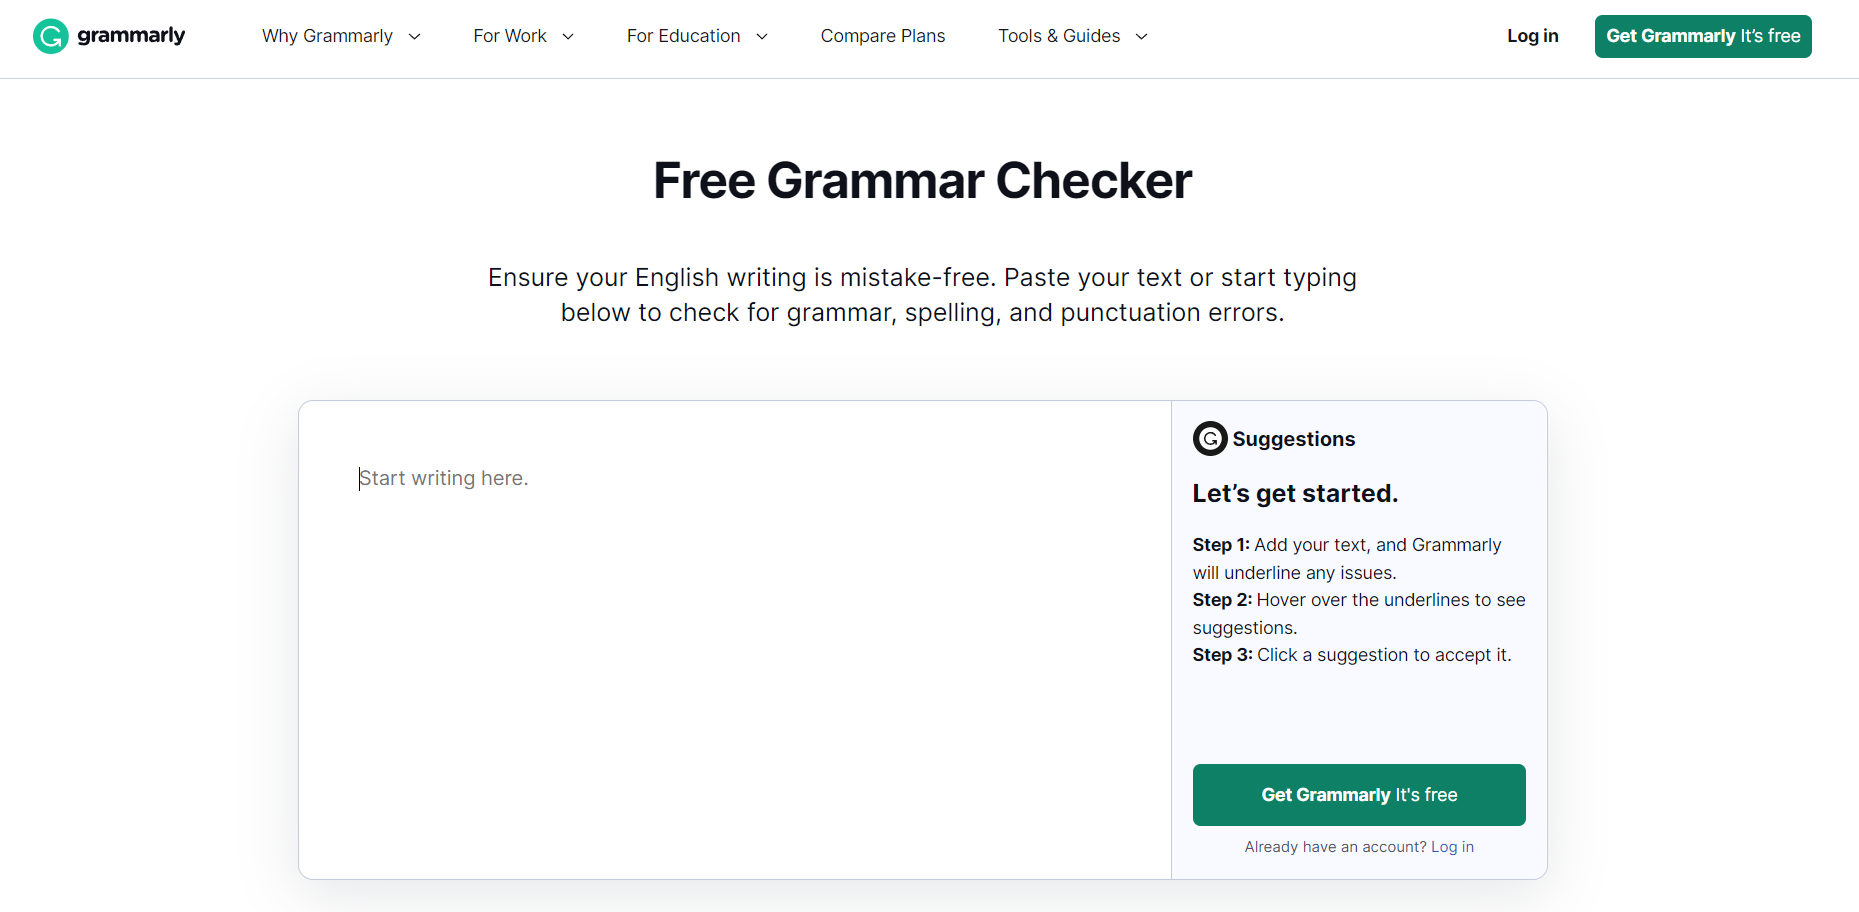 Grammarly Free Grammar Checker Features